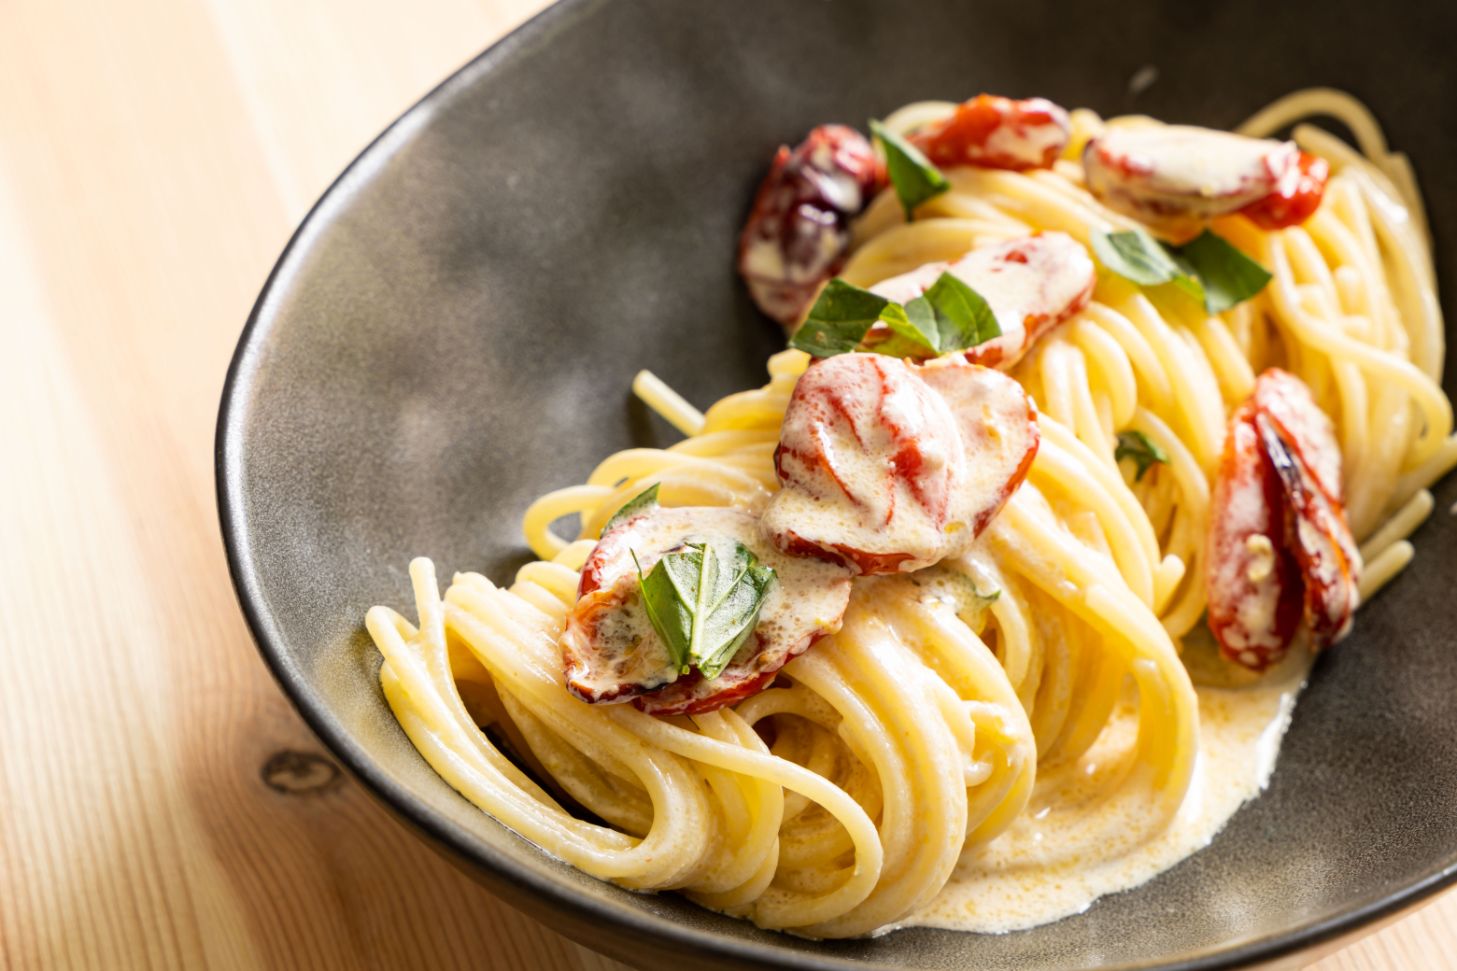 Spaghetti freddi con burrata e pomodorini al forno | Ricette | Conad